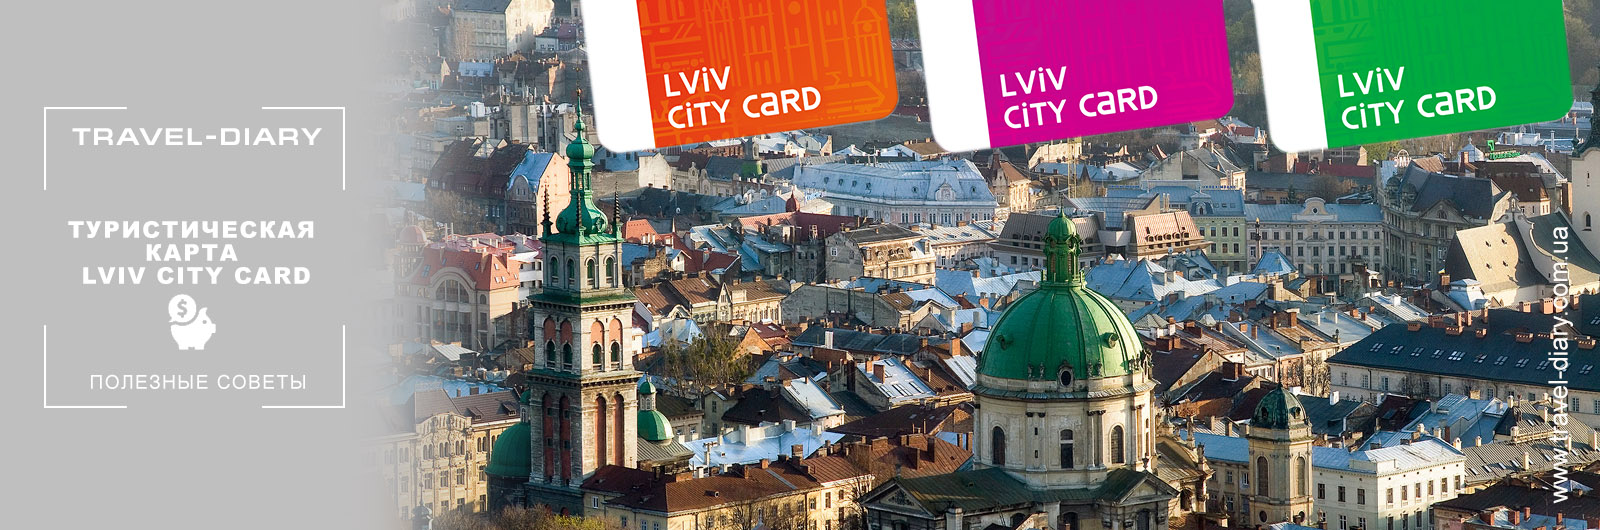 Туристическая карта Lviv City Card